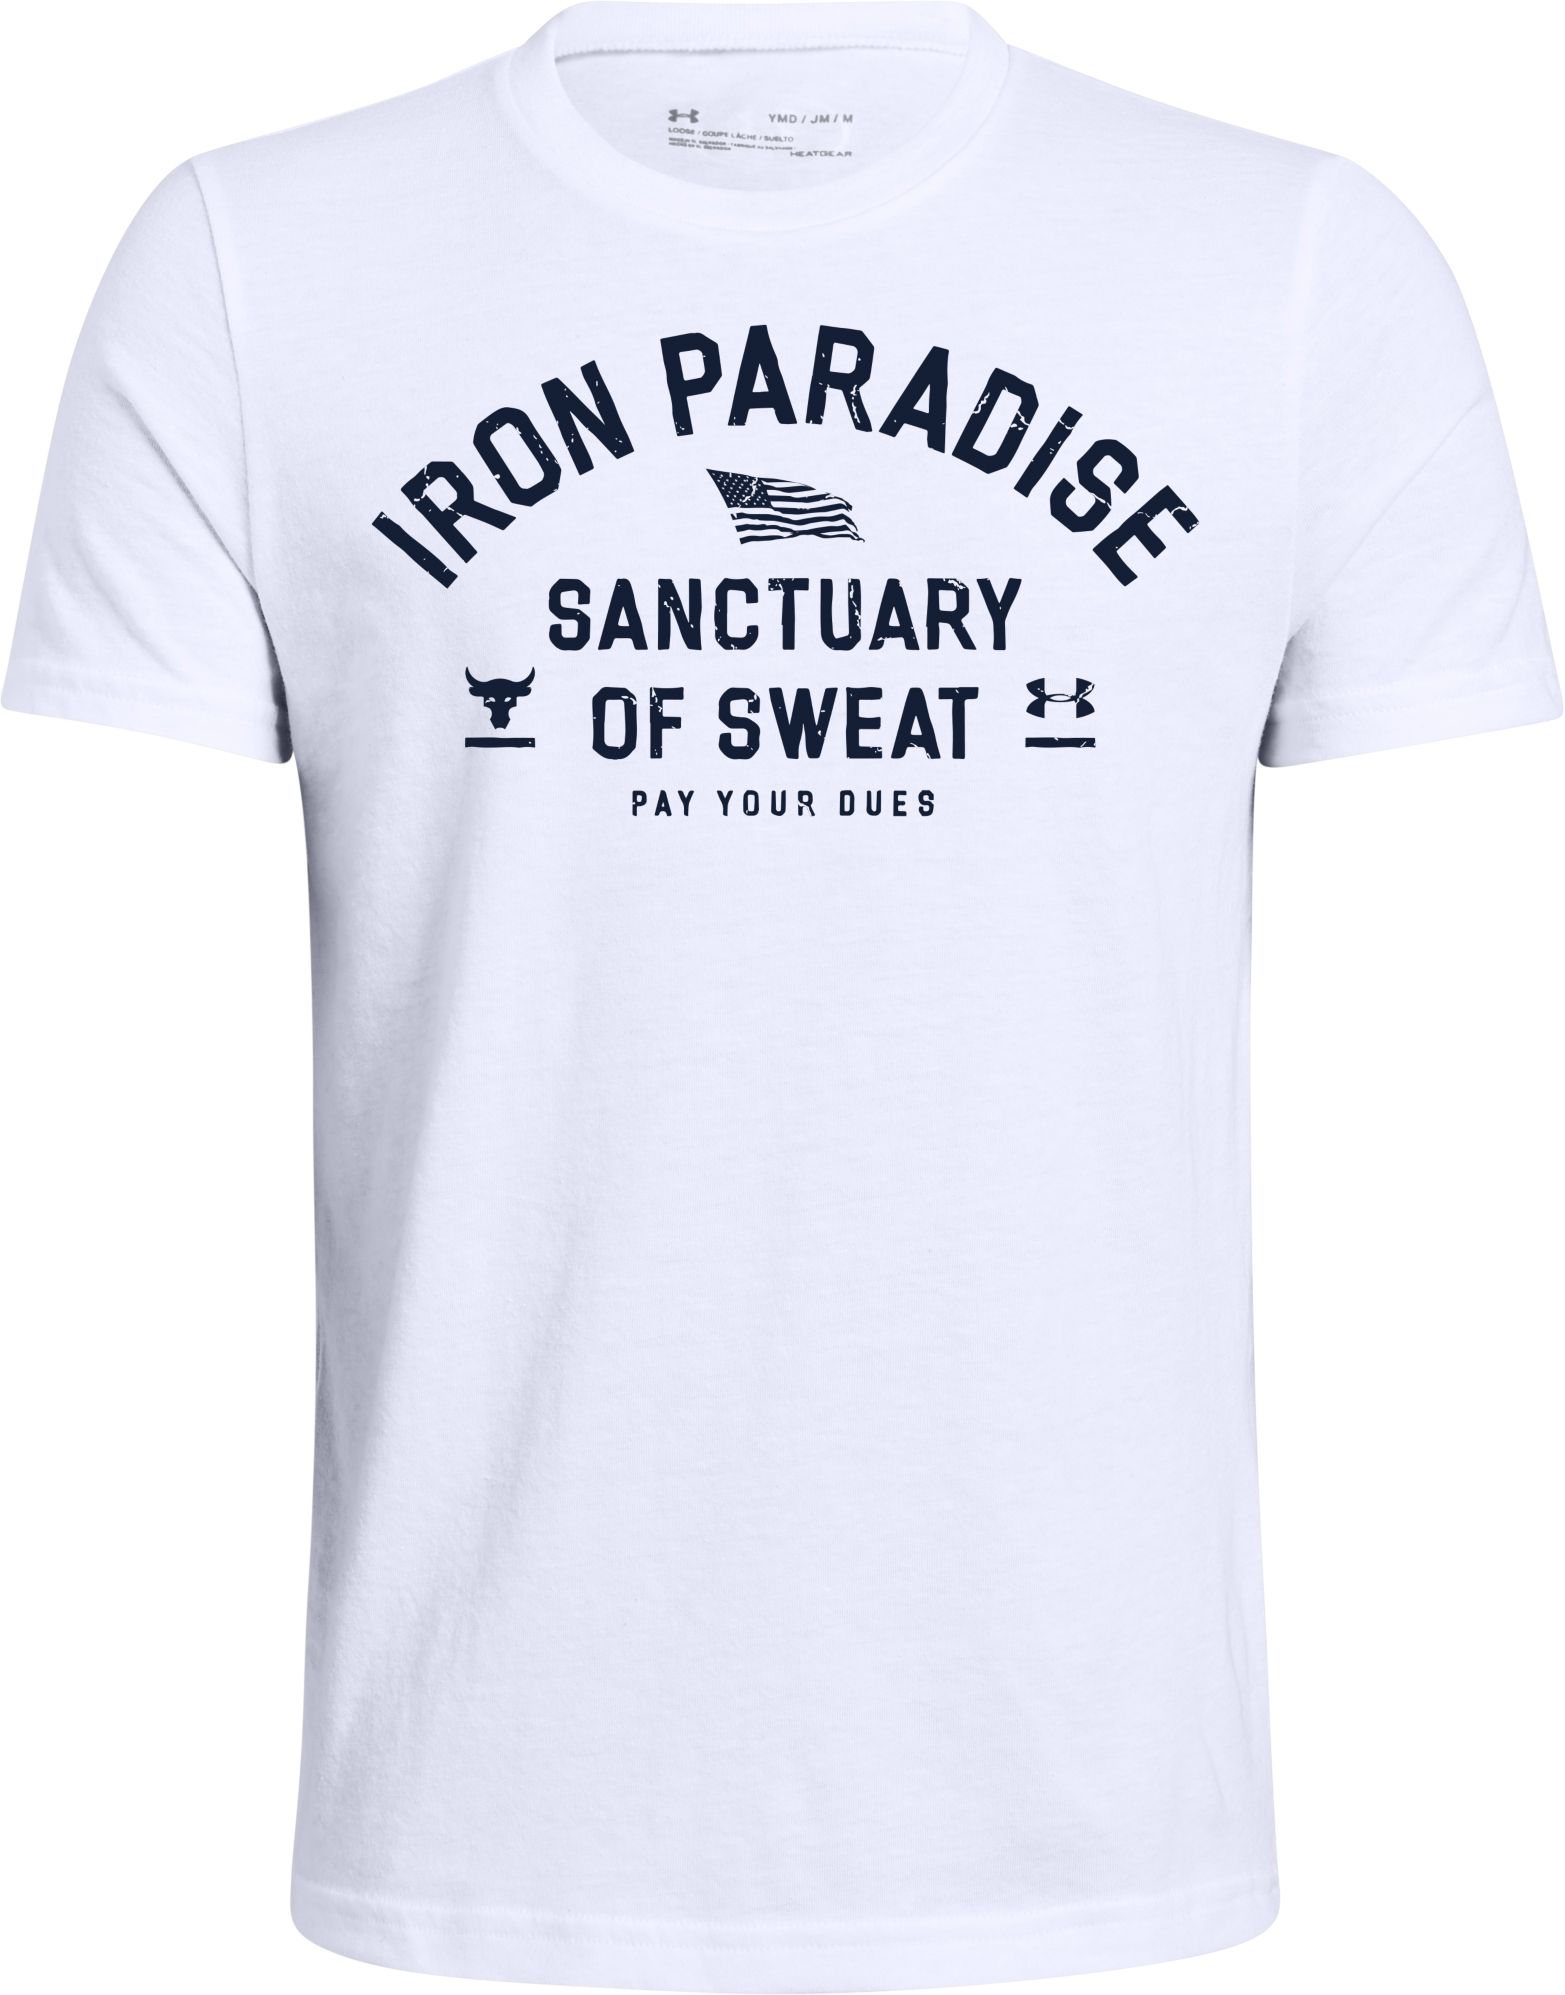 iron paradise shirt